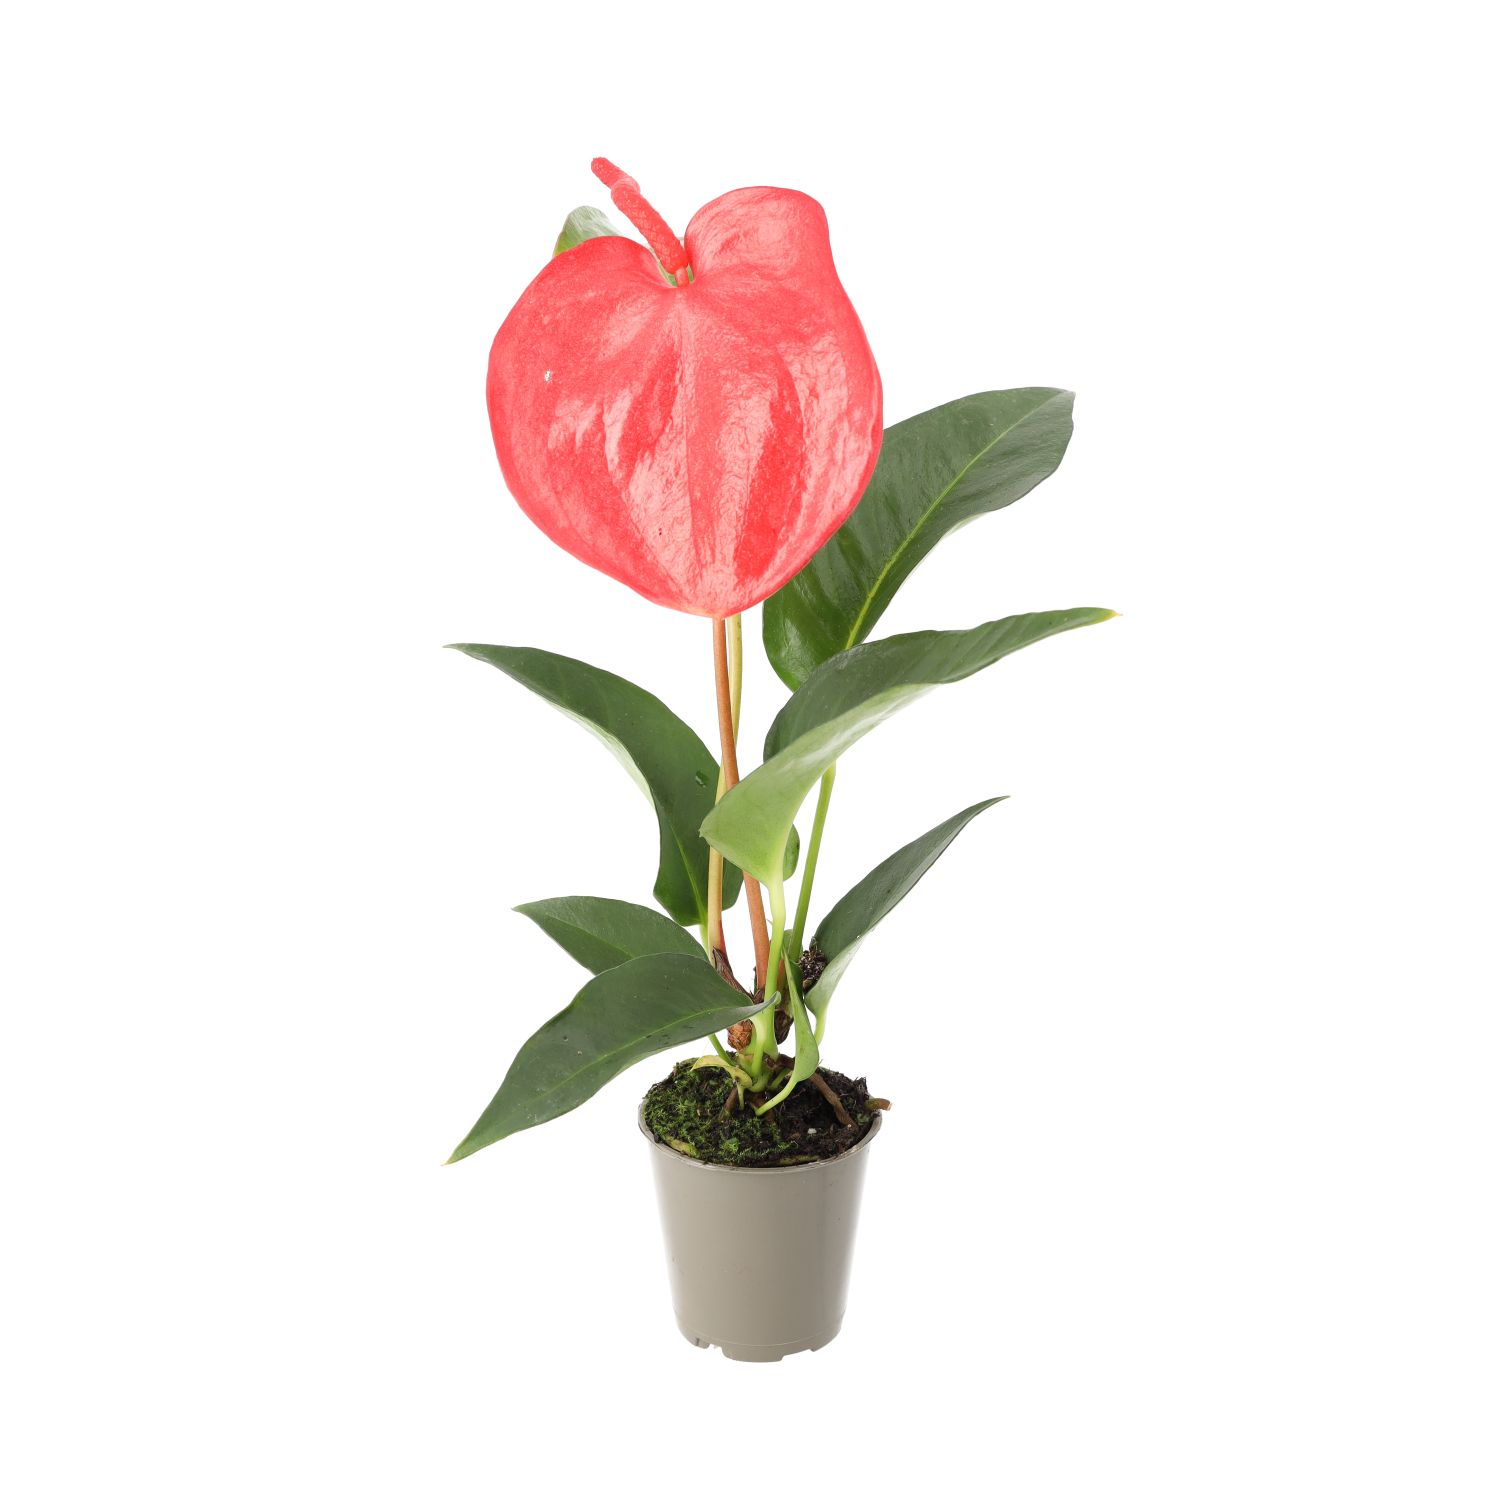 PR Live plant: Flamingo Flower (Small)